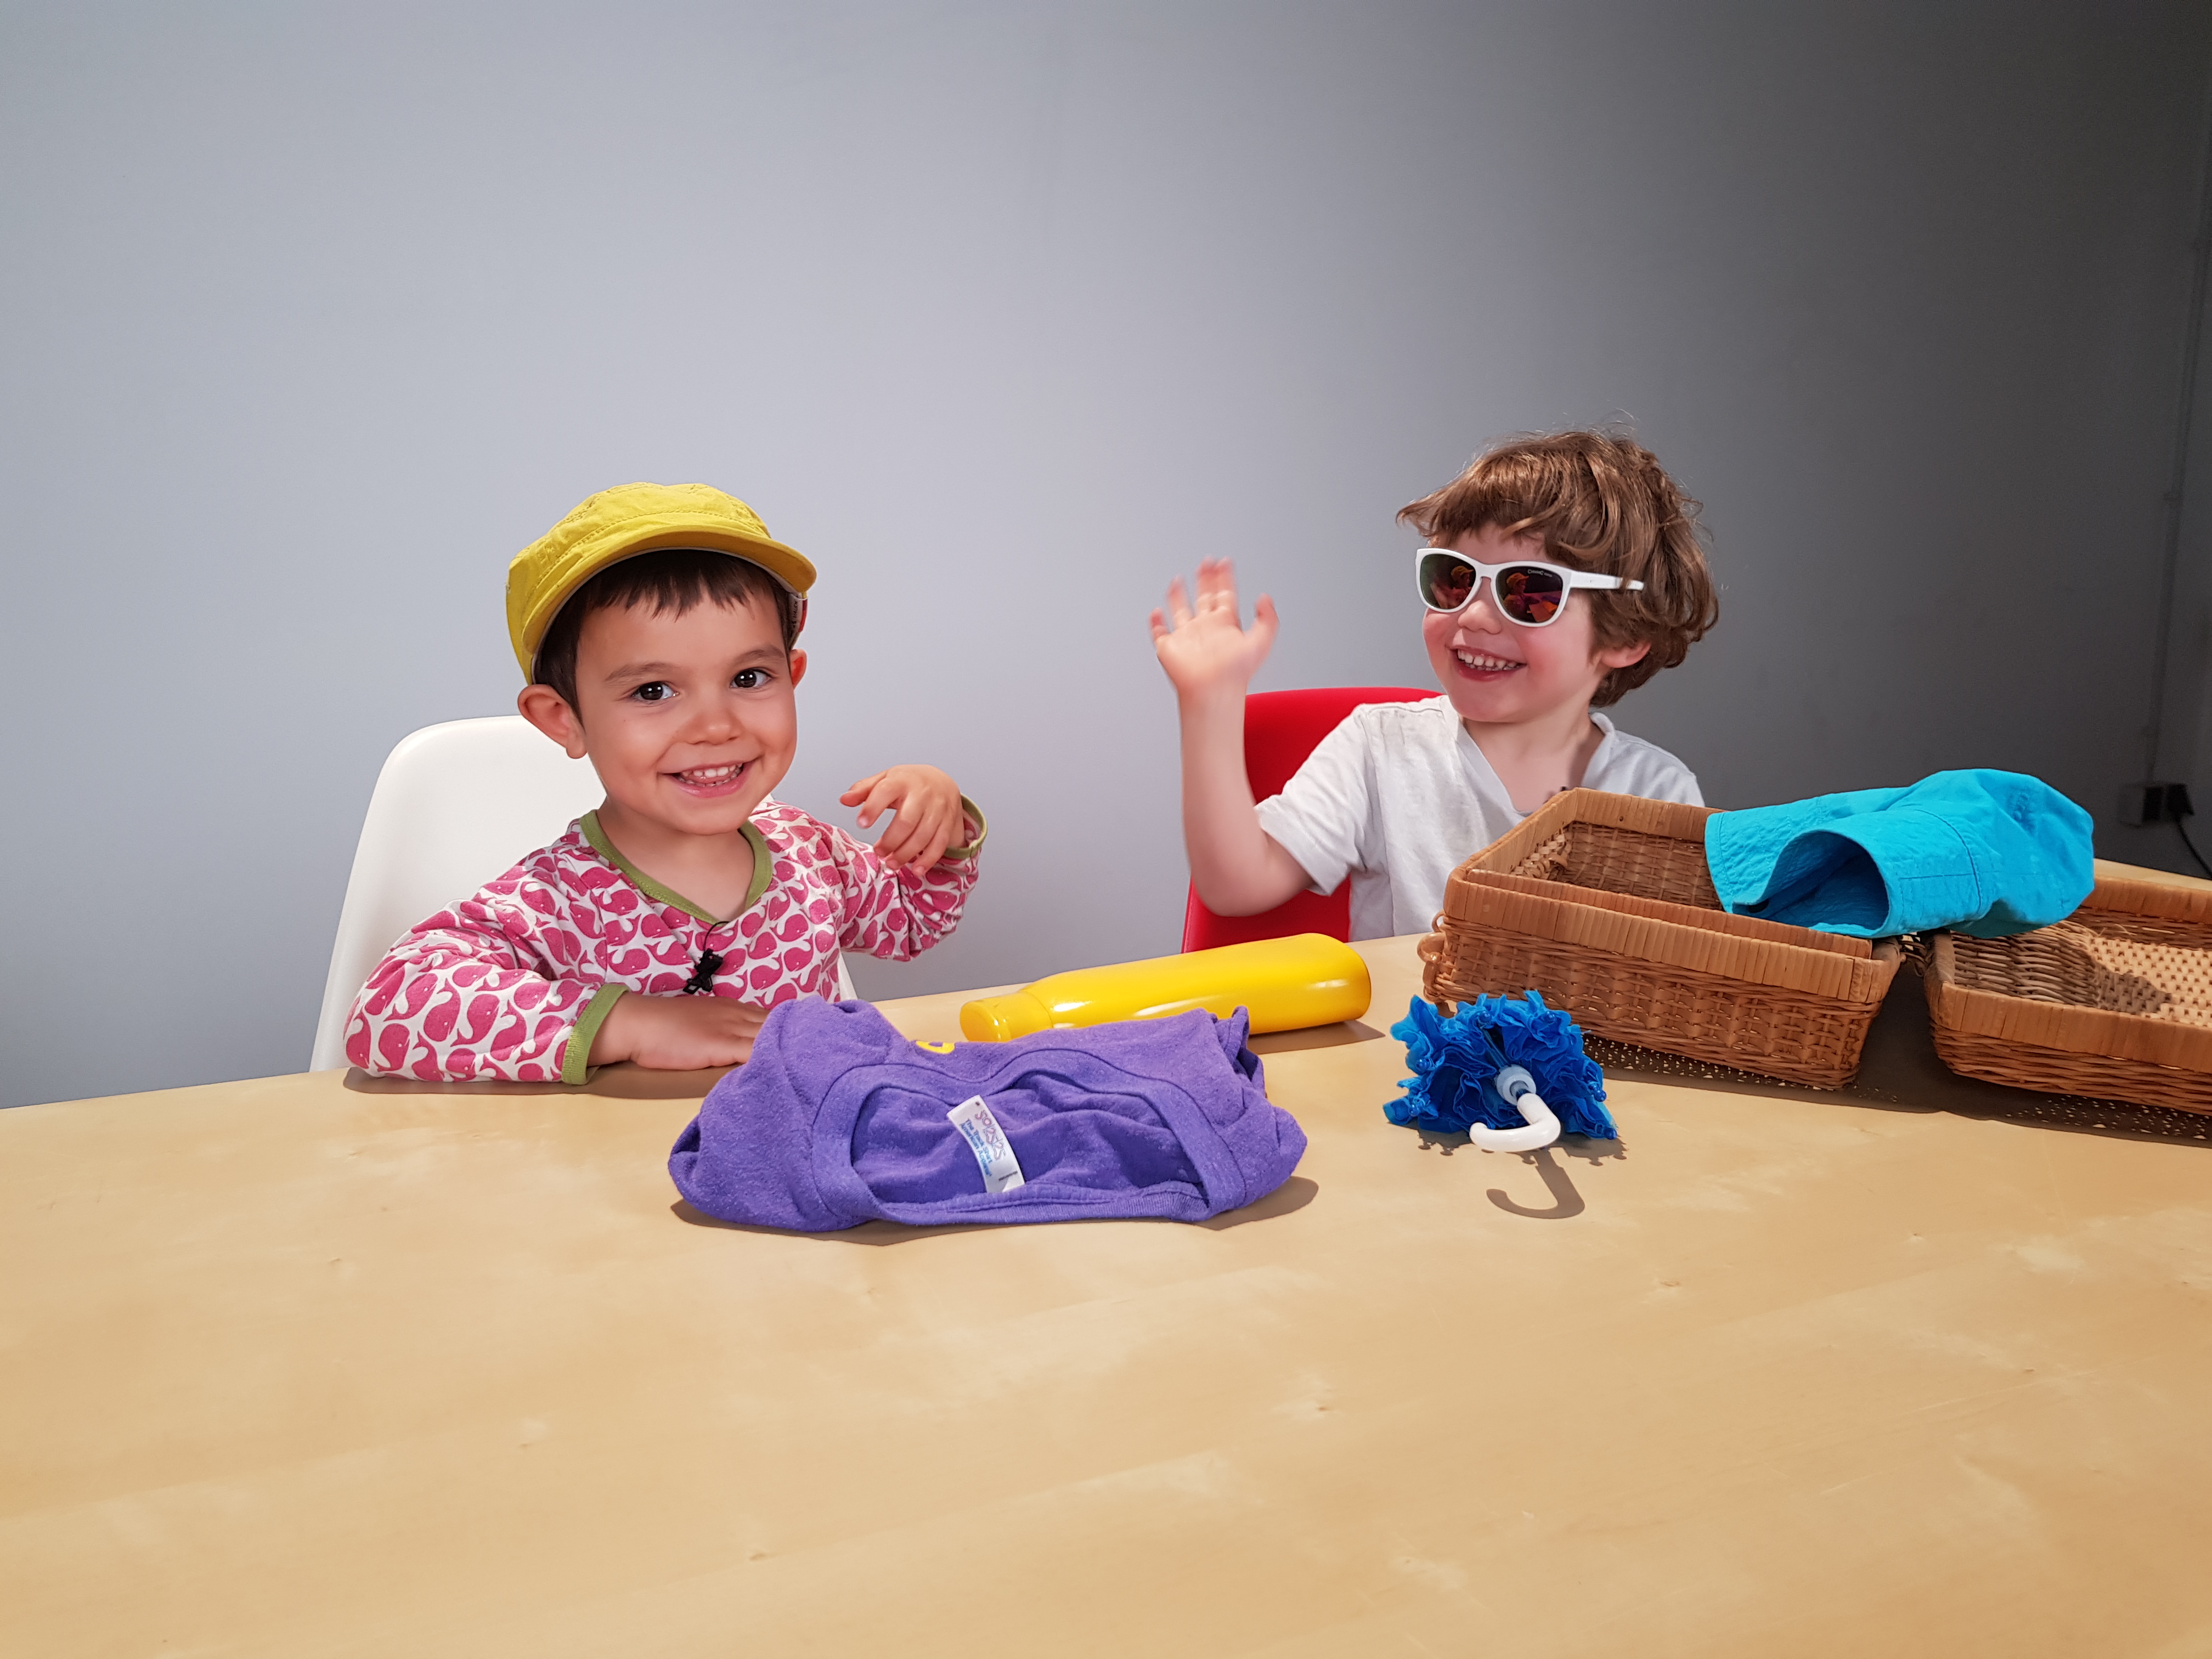 Kinder spielerisch für Sonnenschutz begeistern / Zum Sommeranfang:  Virtueller